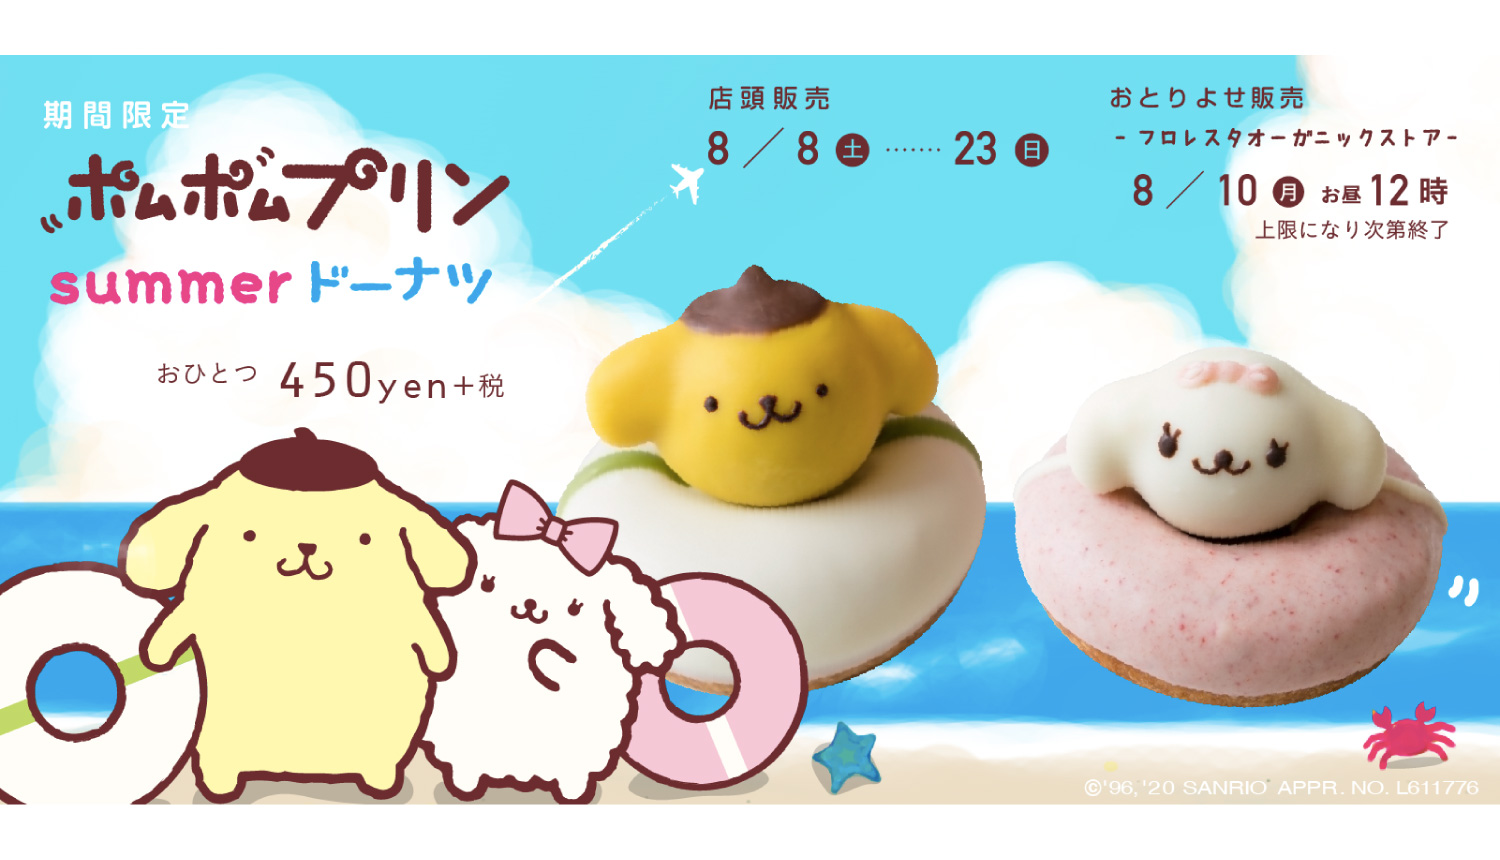 ポムポムプリンドーナツ Pompompurin Doughnuts布丁狗甜甜圈 1 もしもしにっぽん Moshi Moshi Nippon